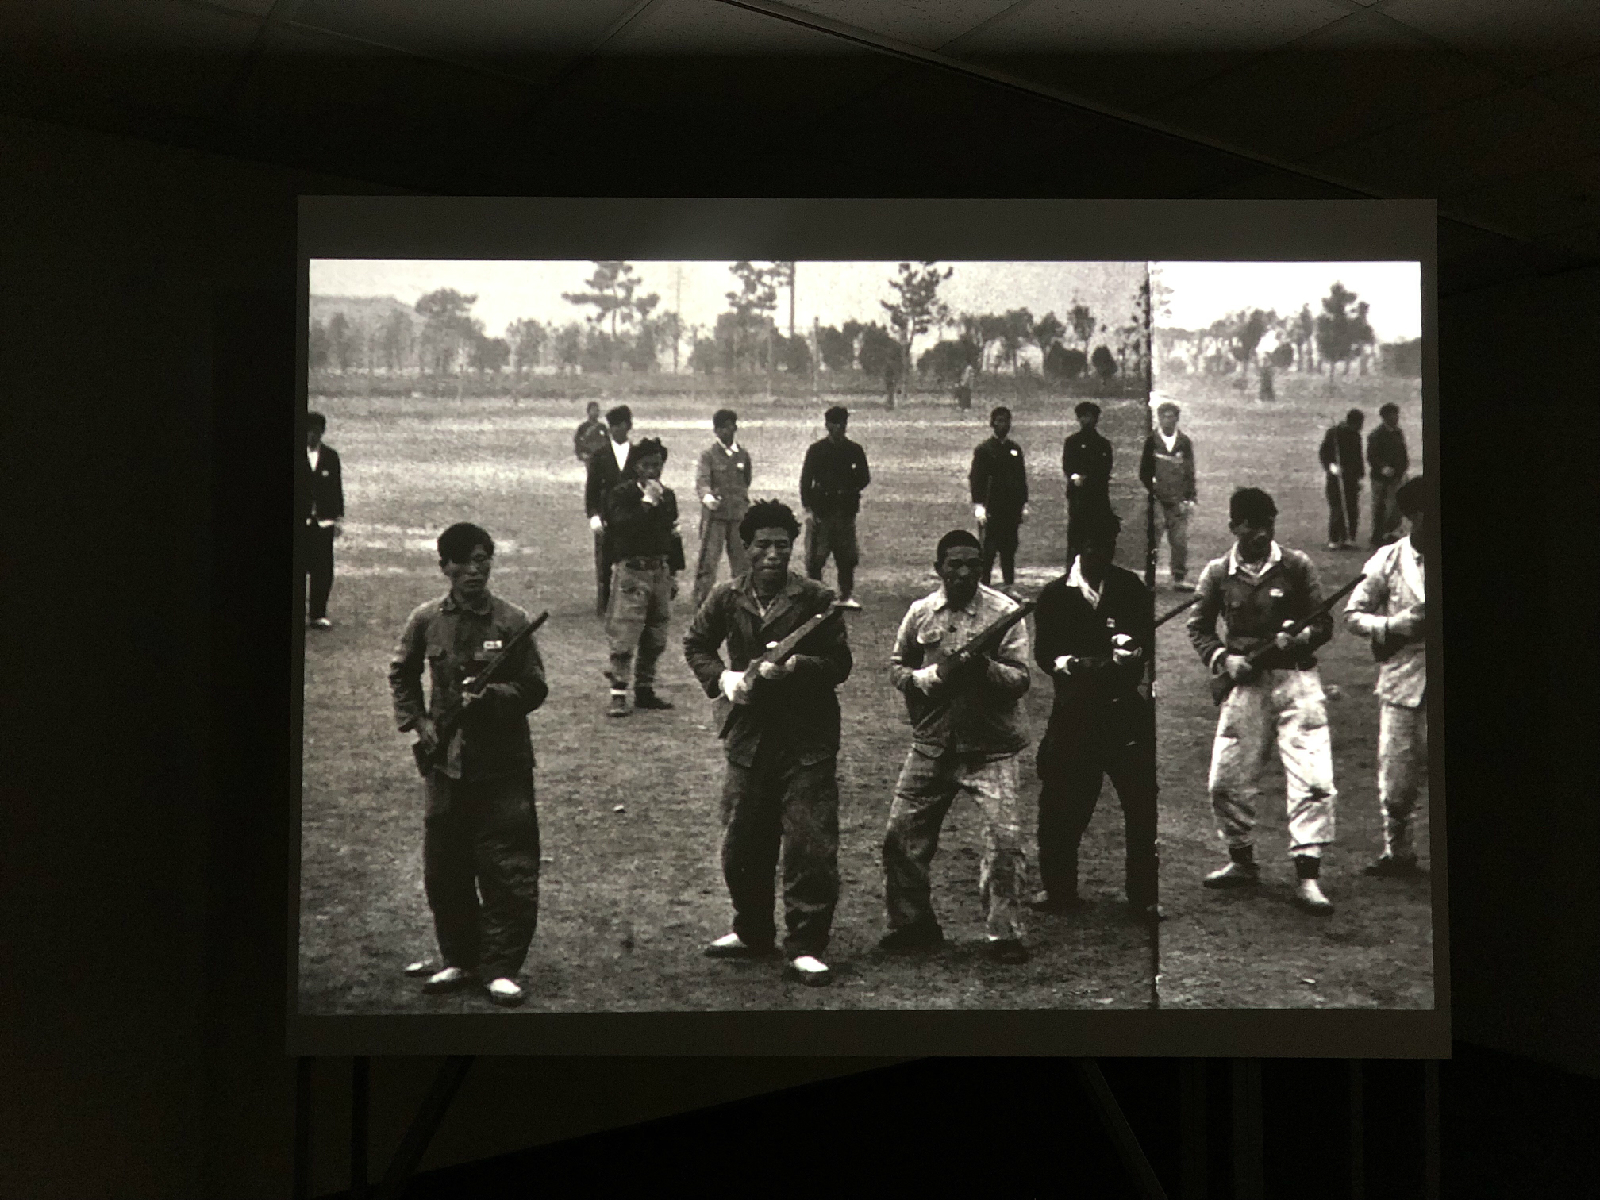 참조 자료 중 하나인 한국 전쟁 당시의 흑백 사진